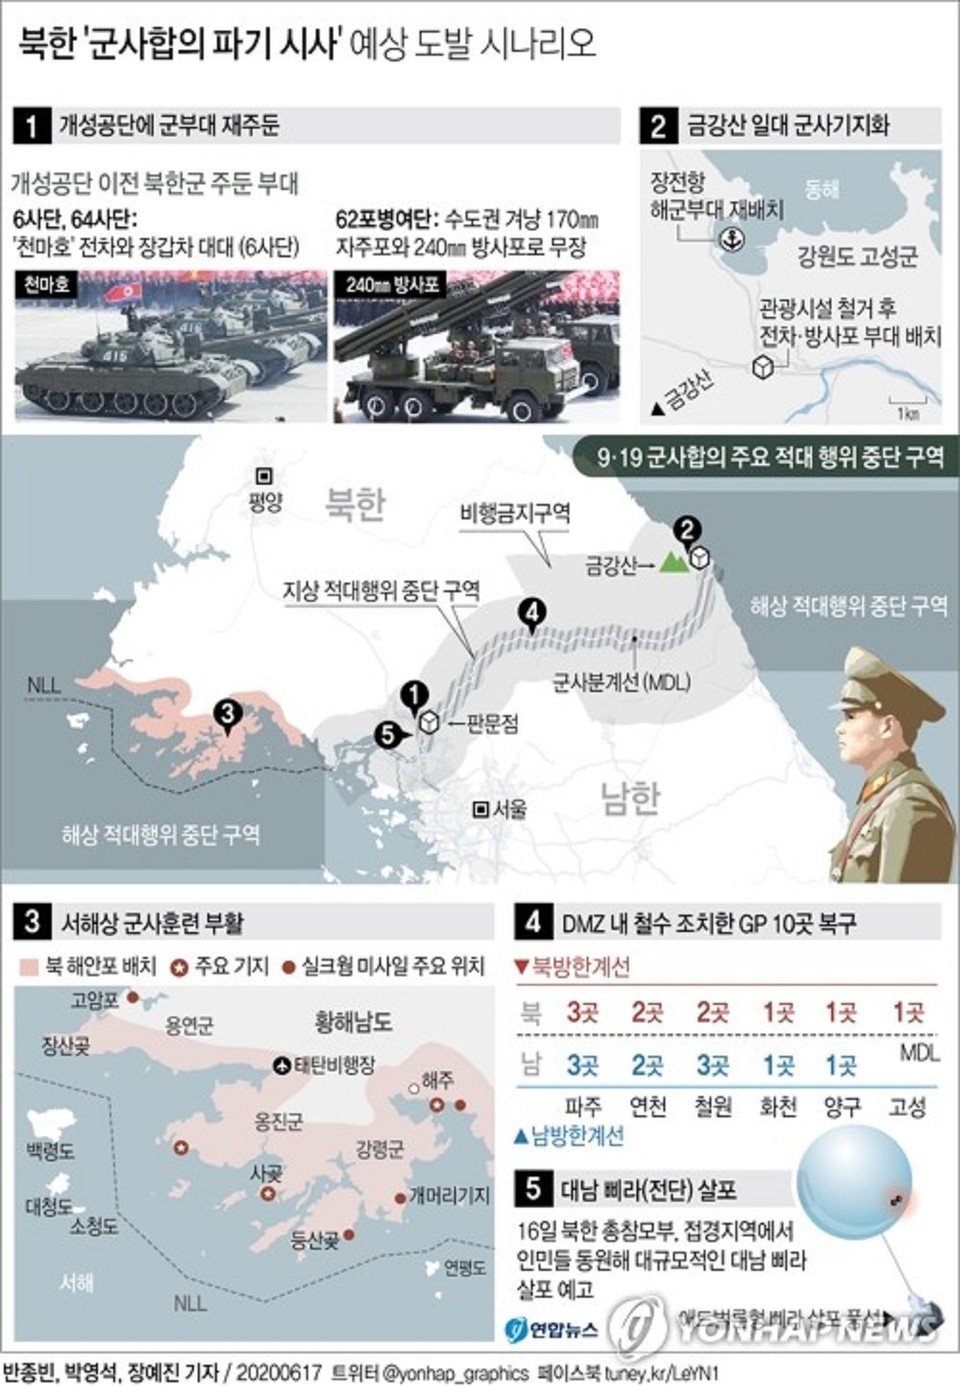 사진: 북한은 개성 남북공동연락소 건물을 폭파한 지 하루 만인 17일 금강산 관광지구와 개성공단, 비무장지대(DMZ) 내 감시초소(GP)에 군부대를 재주둔시키고 서해상 군사훈련도 부활시키겠다고 전격 발표했다.